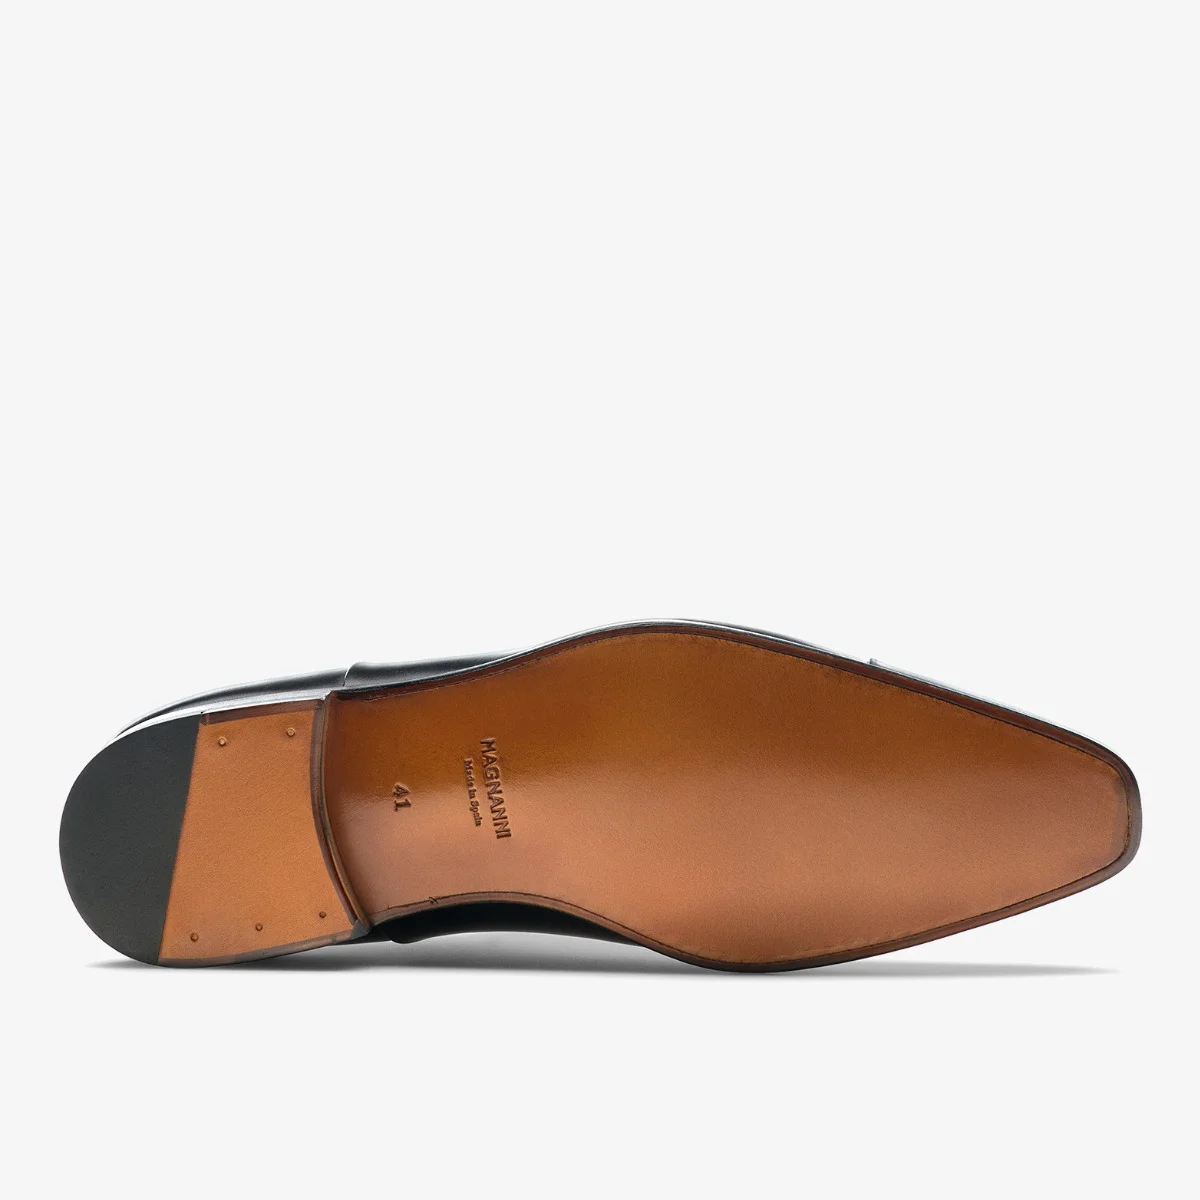 Magnanni Milos dark mahogany toe cap oxford shoes